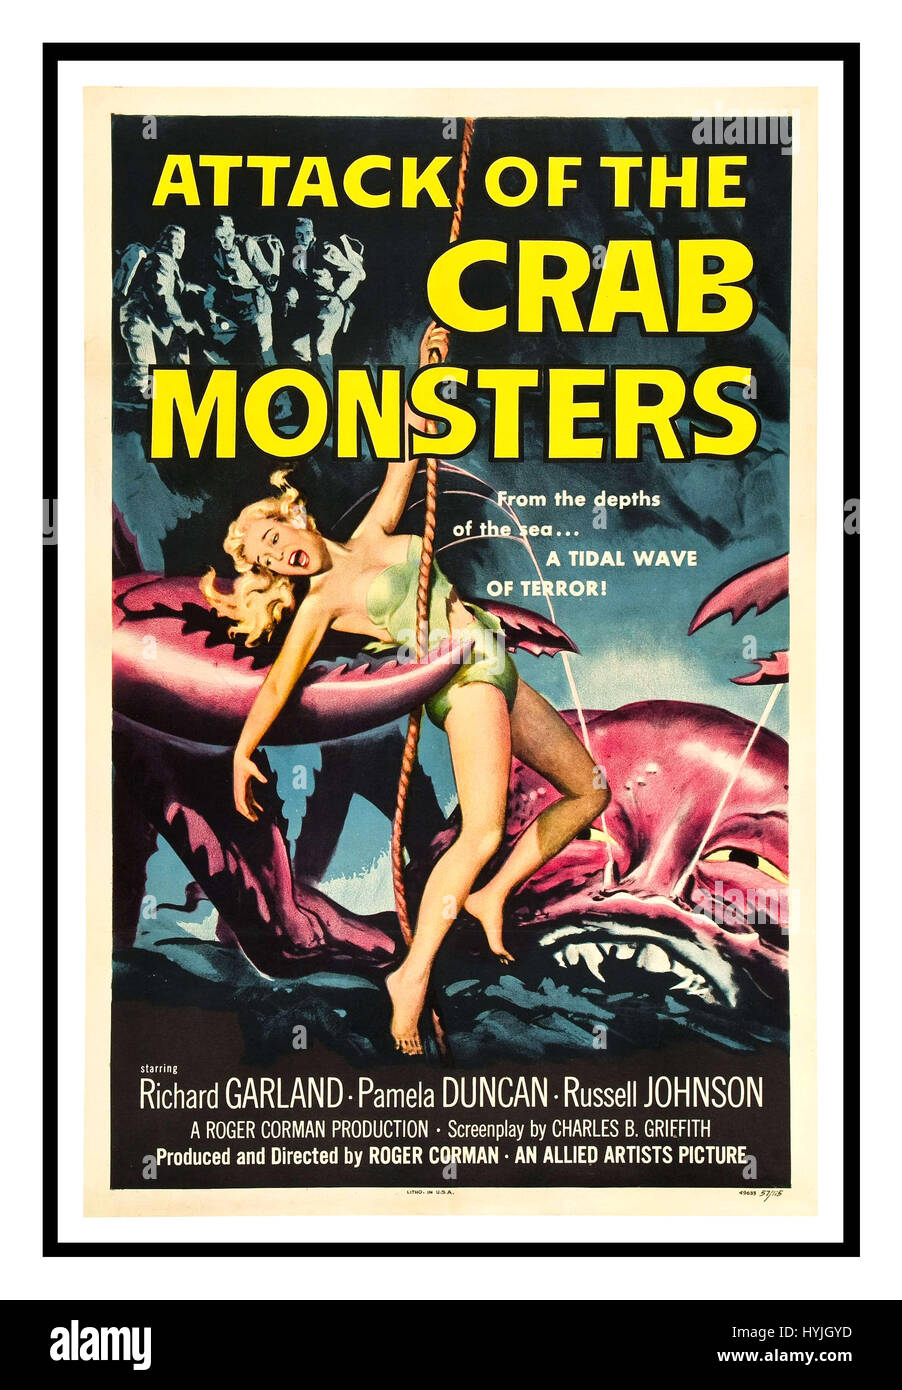 ATTACK OF THE CRAB MONSTERS el póster de la película Vintage anuncia la película de terror de ciencia ficción de 1957 Attack of the Crab Monsters producida y dirigida por Roger Corman, protagonizada por Richard Garland, Pamela Duncan y Russell Johnson Foto de stock